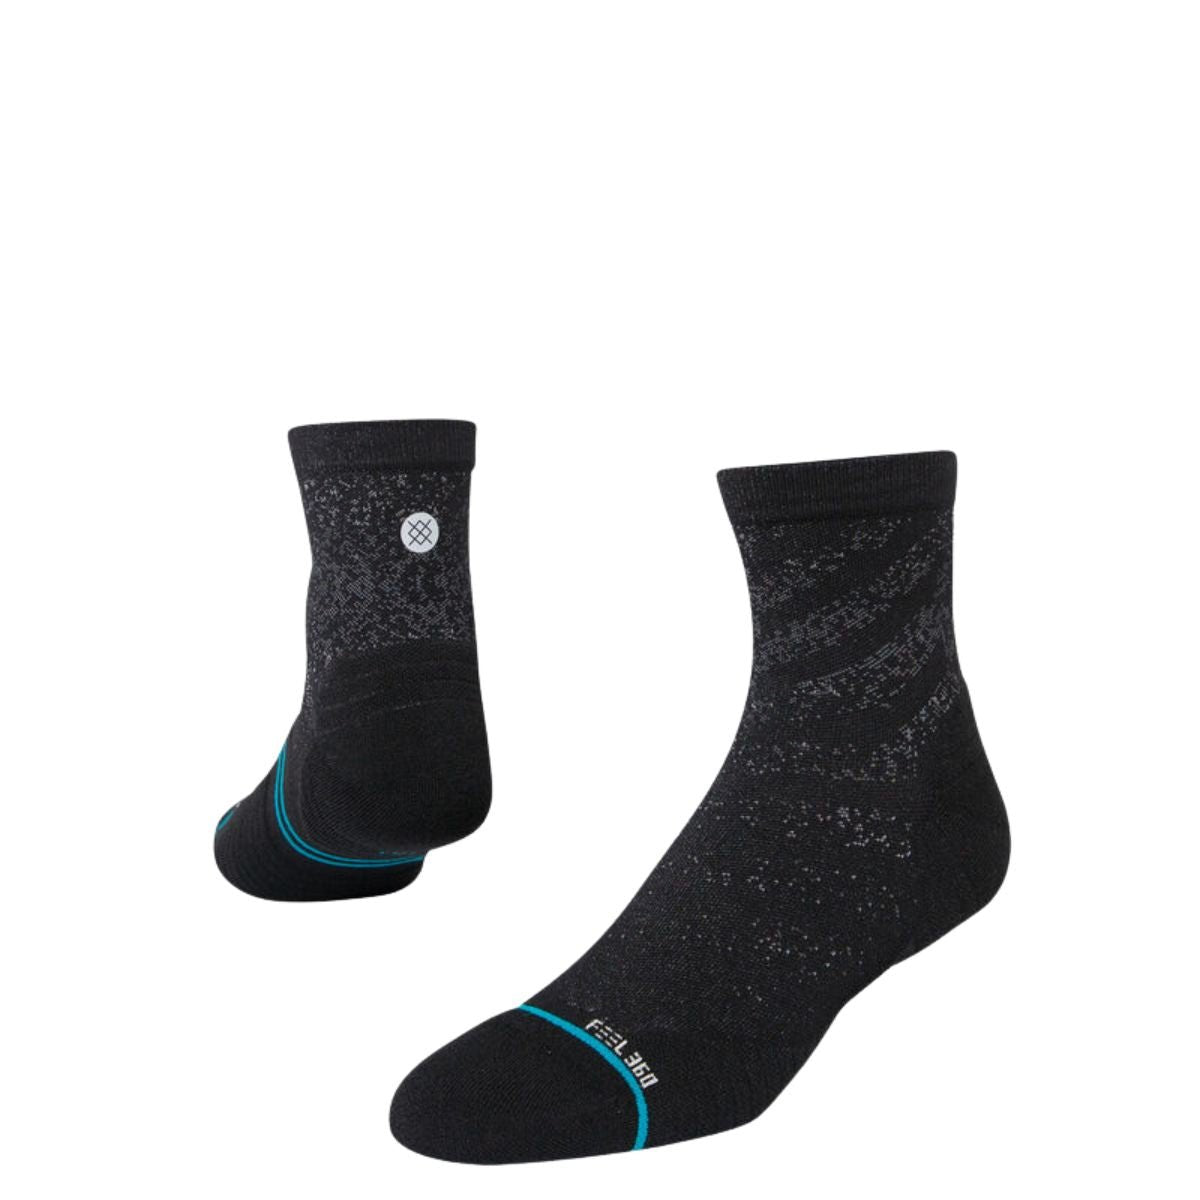 Stance Run Light Quarter Socks in Black - BoardCo